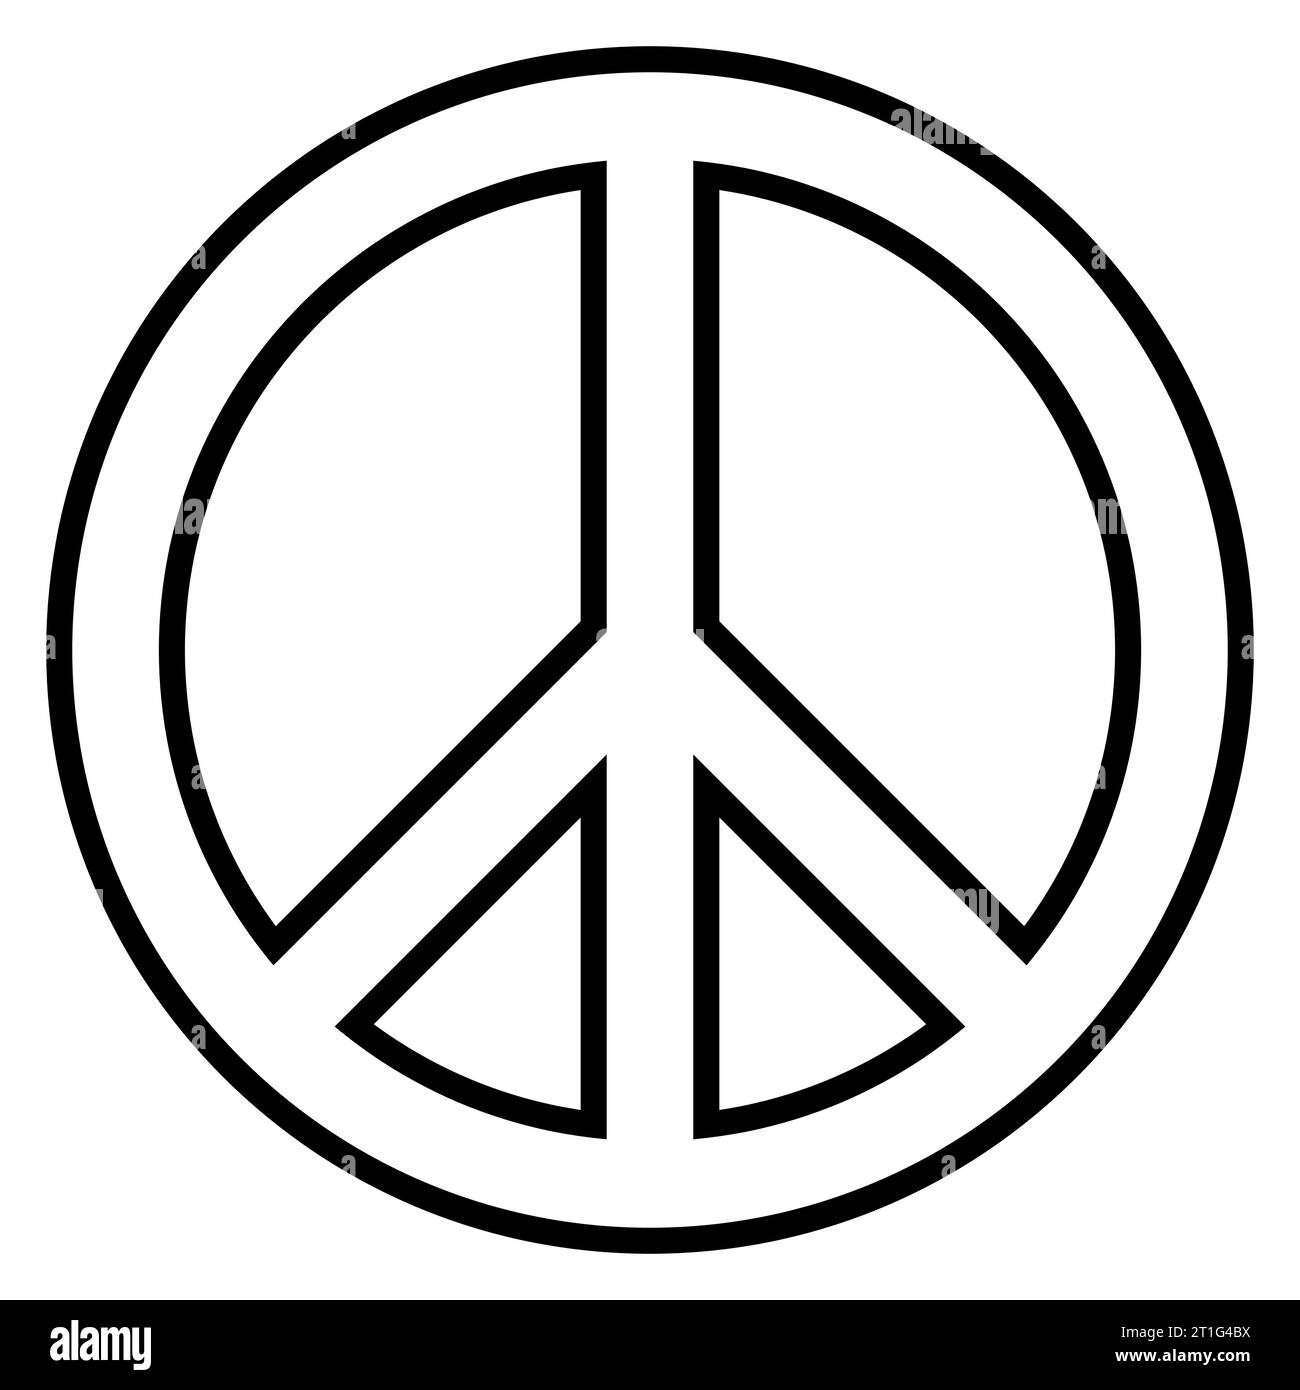 Symbole de paix - cercle signe de paix, illustration vectorielle en noir et blanc, isolé sur blanc Illustration de Vecteur